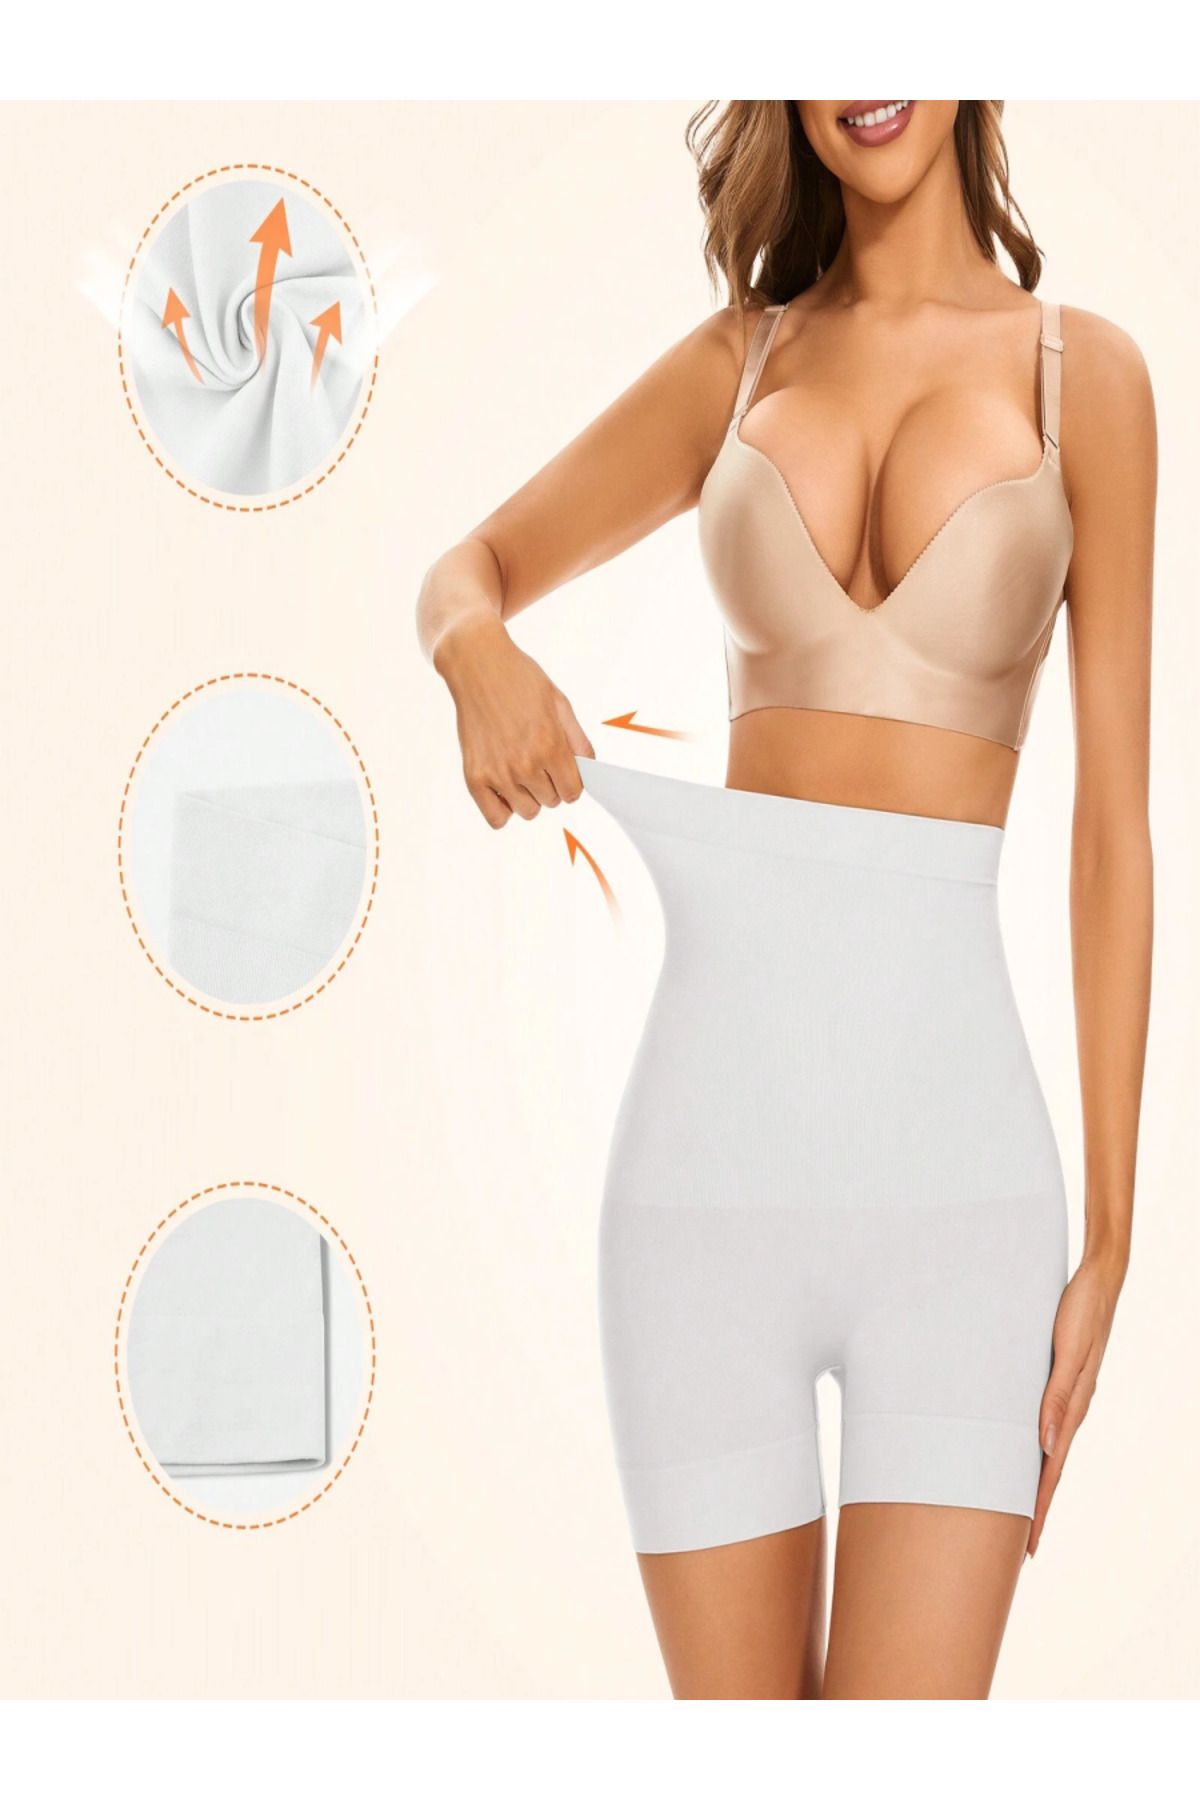 MİSTİRİK Irina Model Şort Spor Korse Seamless Model Örme Kumaş Şort Korse Push Up Beyaz Renk